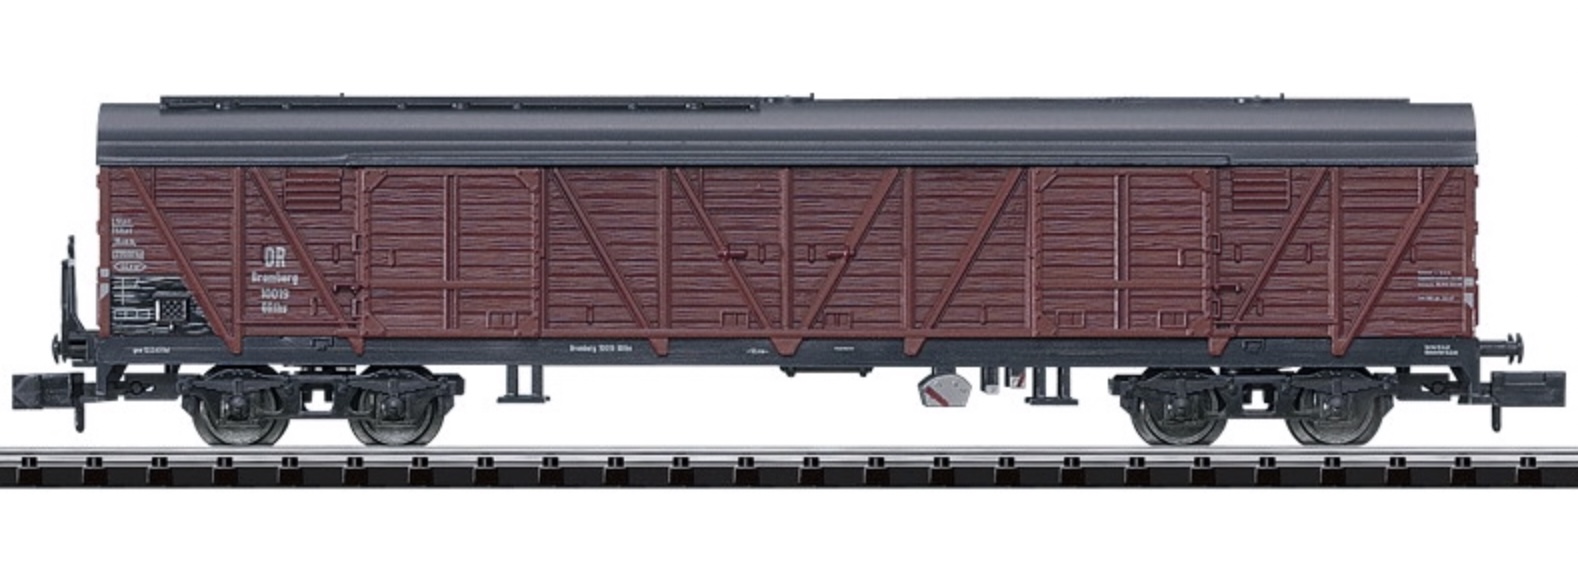 N Scale - Minitrix - 15133 - Boxcar, Wood, Bromberg, Epoch II - Deutsche Reichsbahn - 10 019